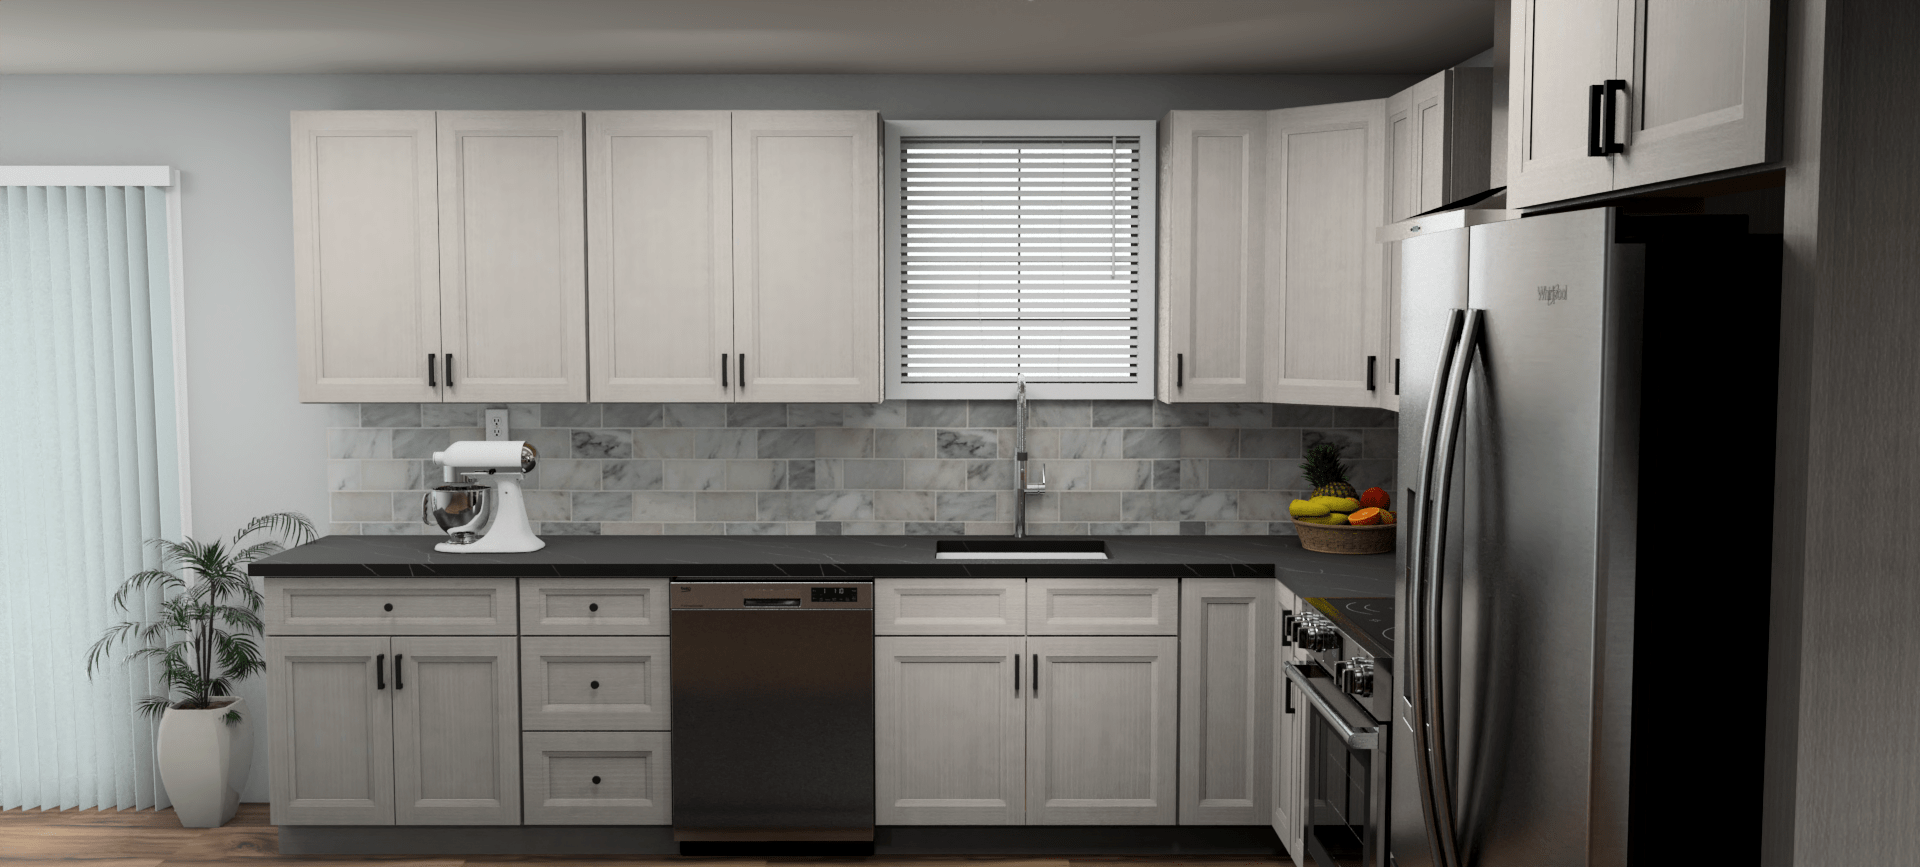 Fabuwood Allure Onyx Horizon 12 x 12 L Shaped Kitchen Side Layout Photo